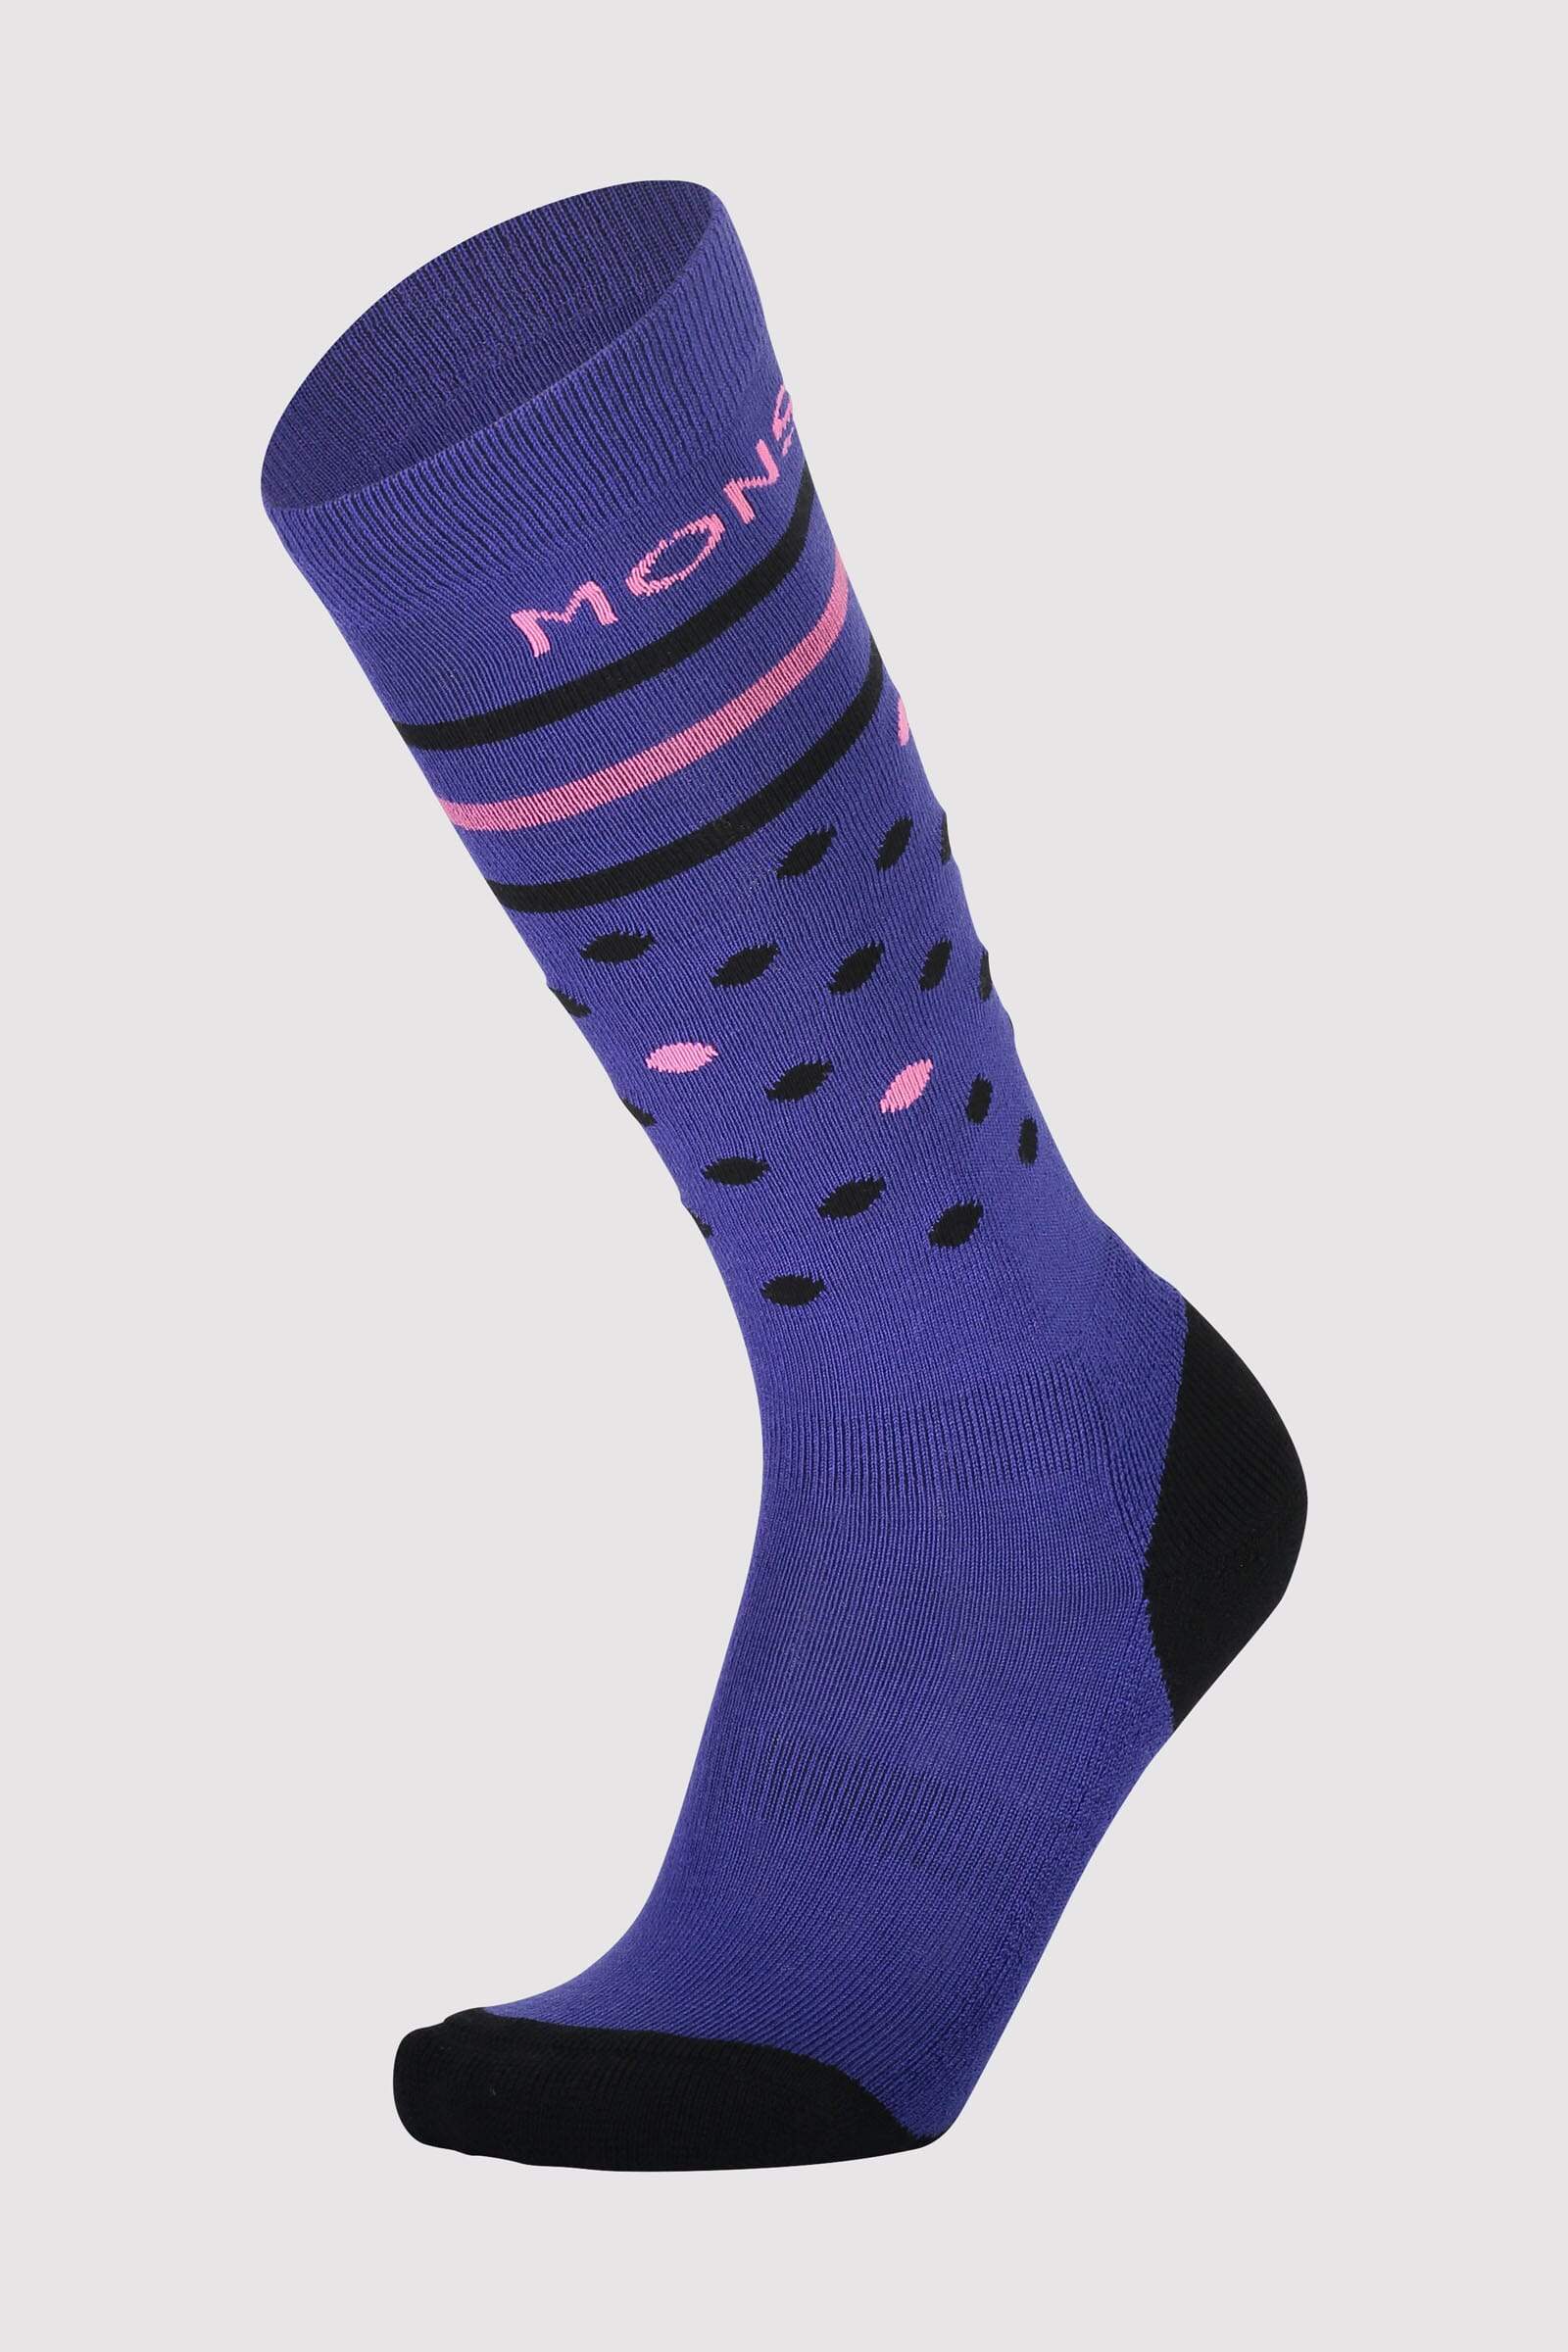 Women's Lift Access Sock - Ultra Blue / Pink